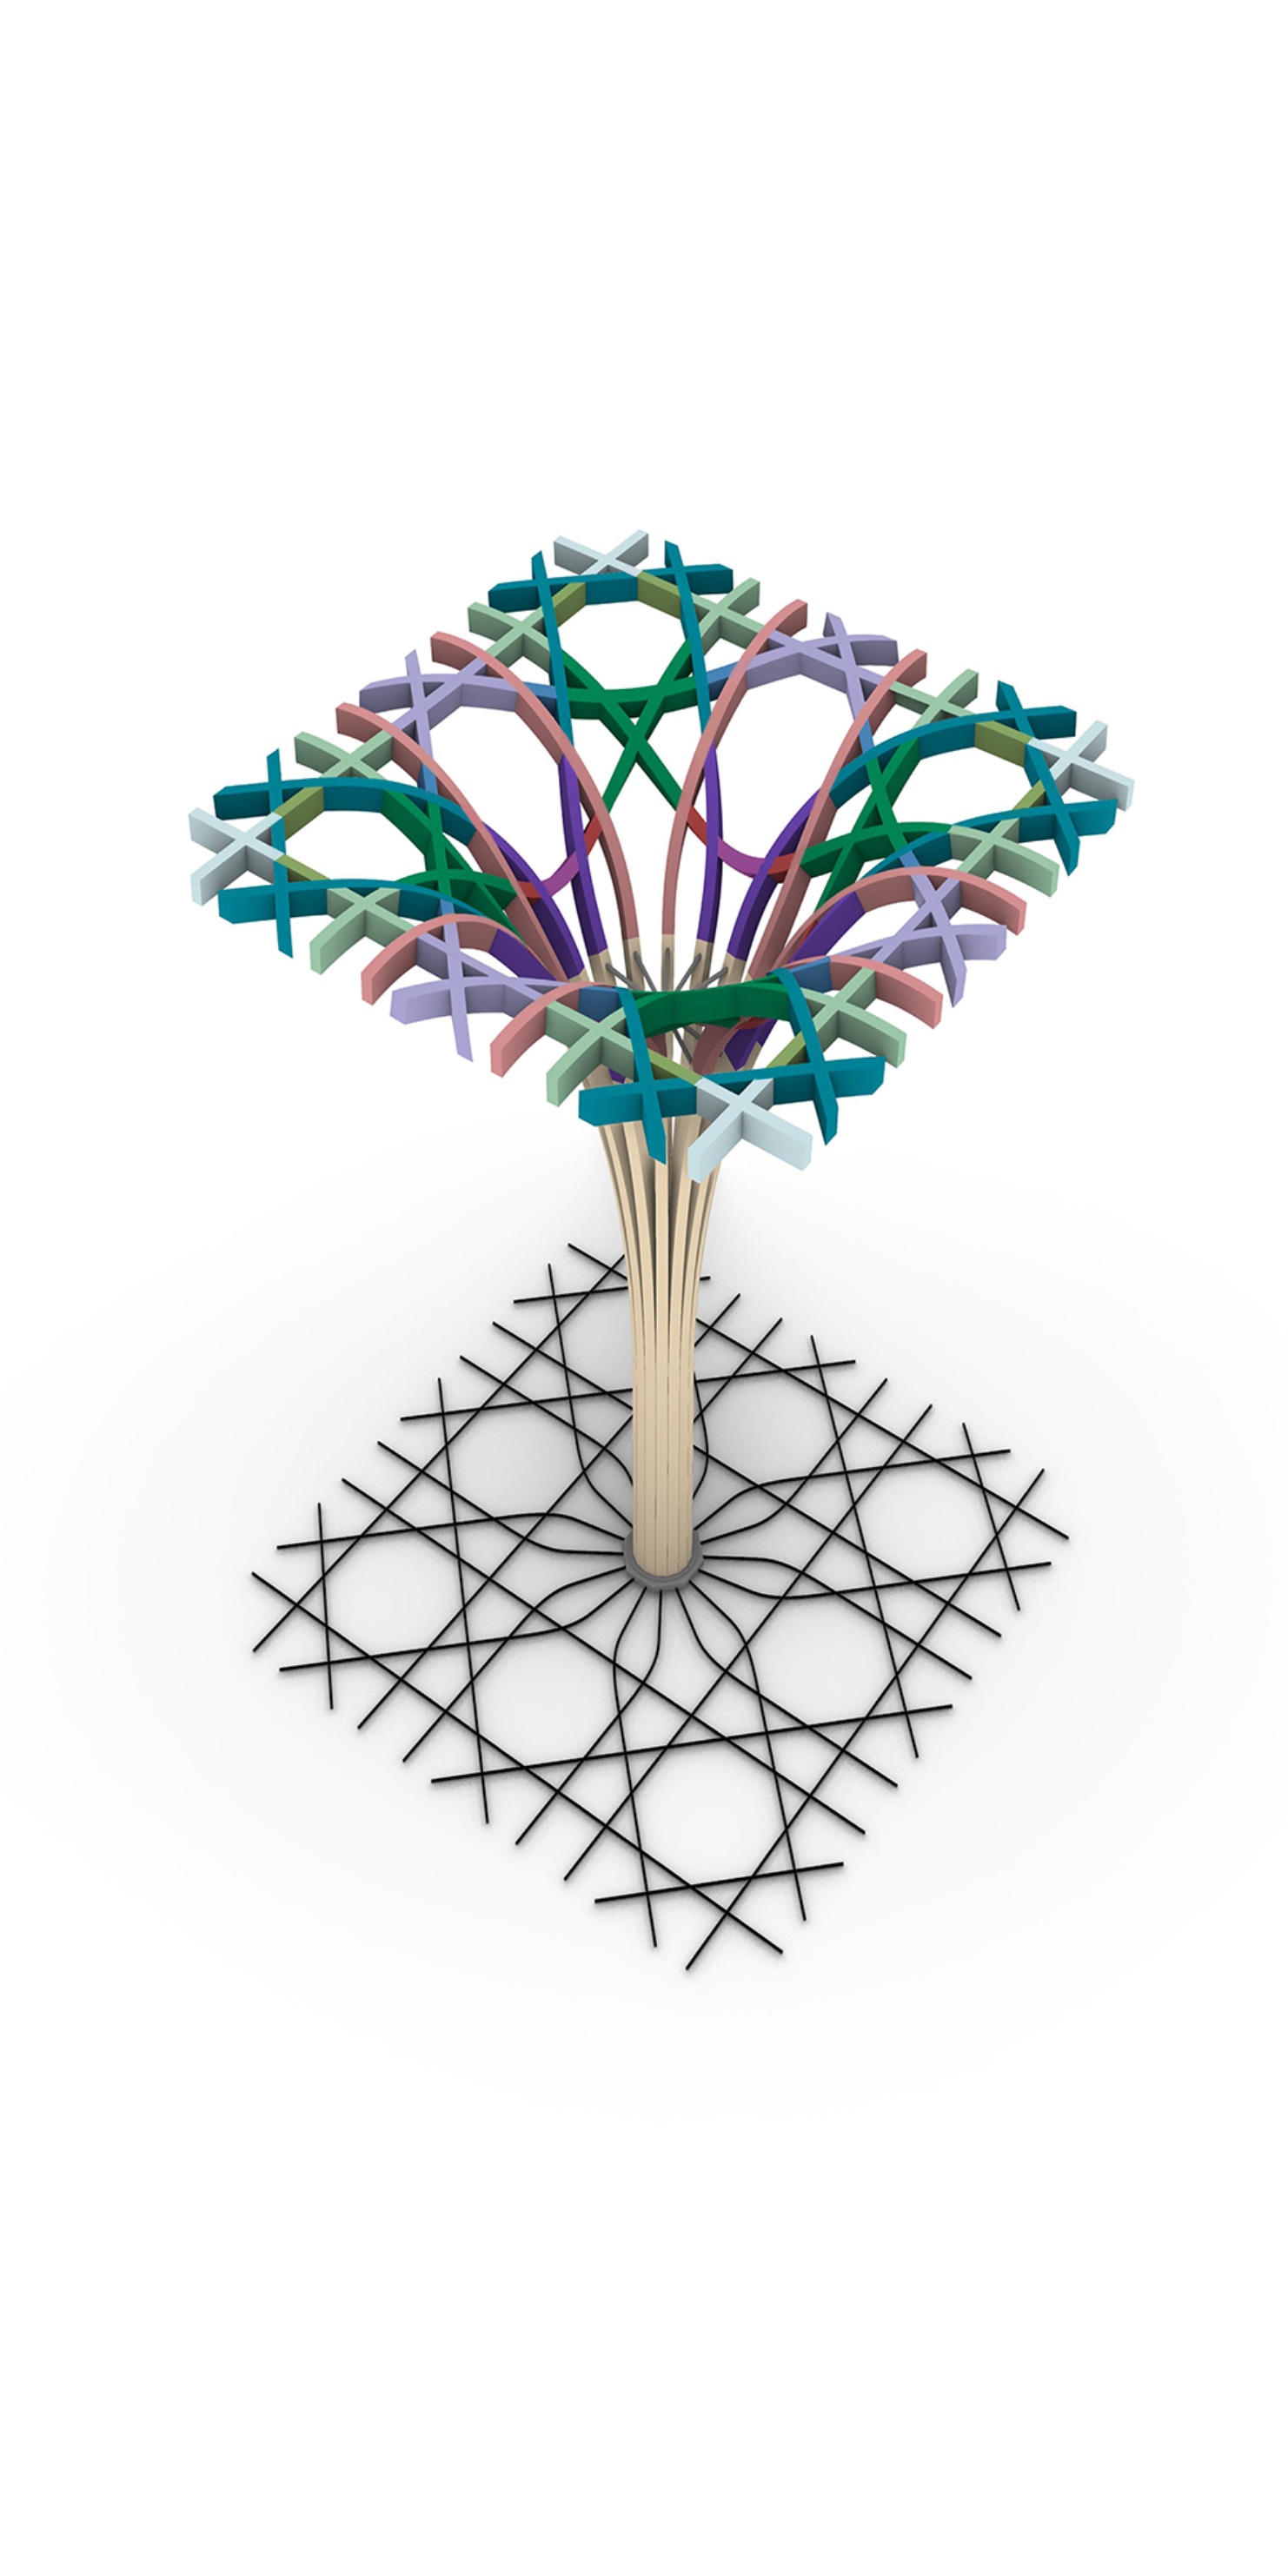 Le modèle de la poutre est conçu avec des nœuds et des raccords, qui sont représentés dans différentes couleurs.